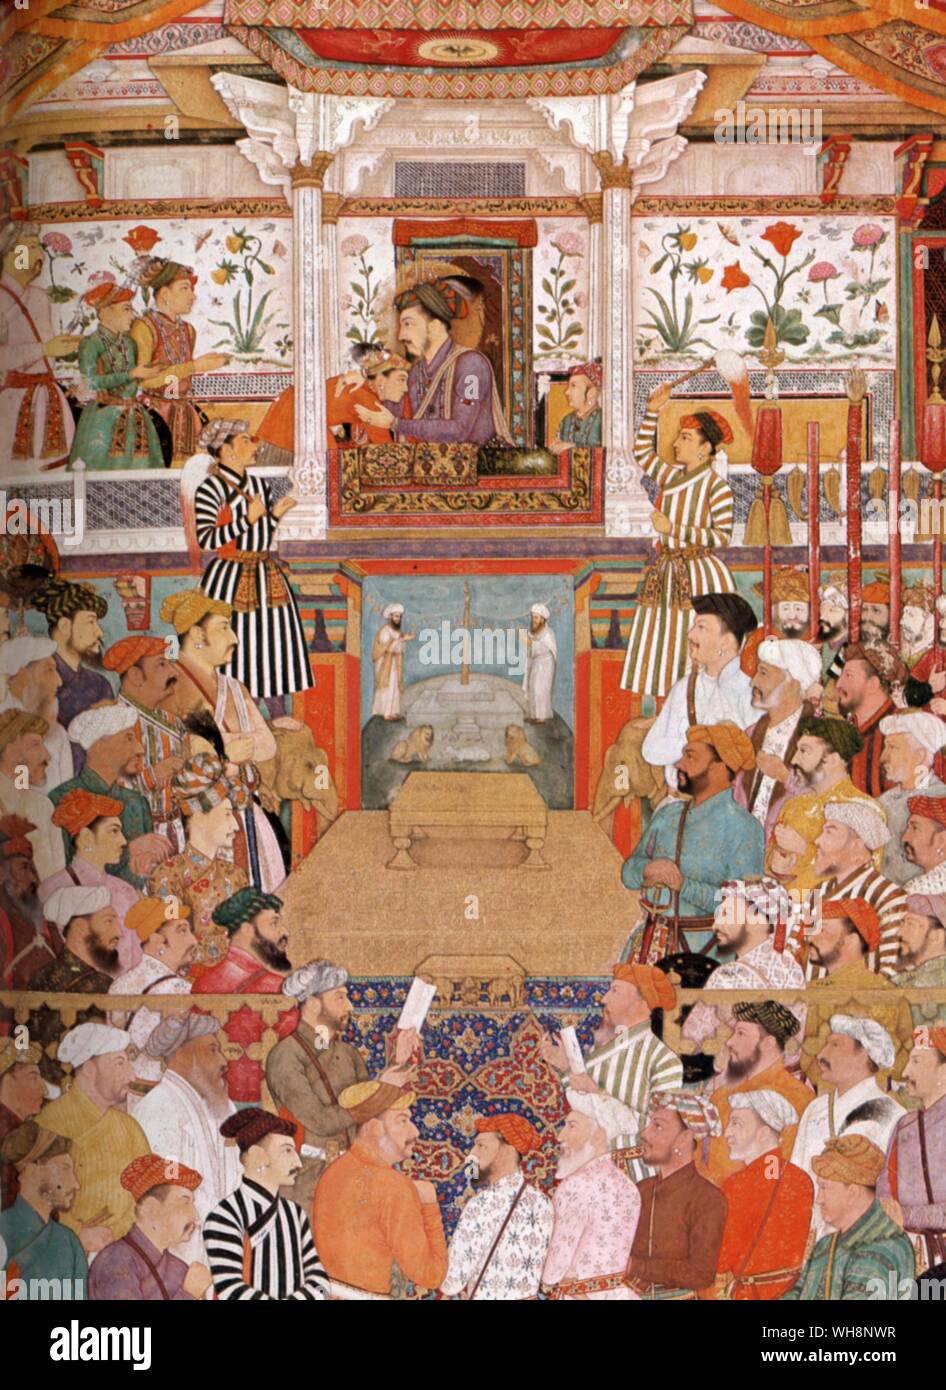 Shah Jahan in durbar, sollevato in balcone-tipo trono che ricorda il ROE di un plyer re in un teatro di Londra: da Bichitr, c.1650 Foto Stock